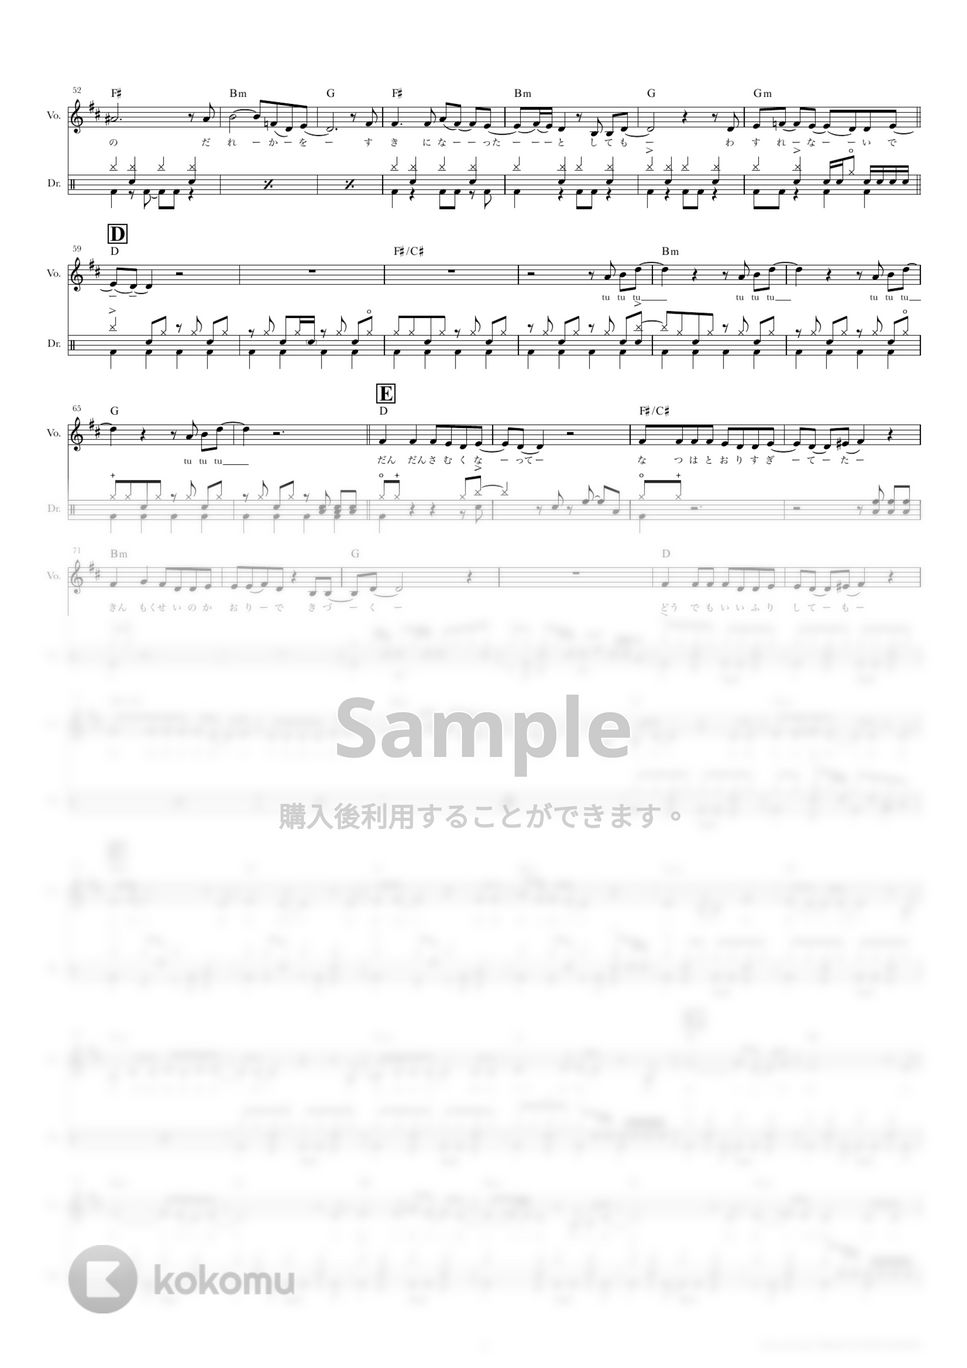 きのこ帝国 - 金木犀の夜 (ドラムスコア・歌詞・コード付き) by TRIAD GUITAR SCHOOL